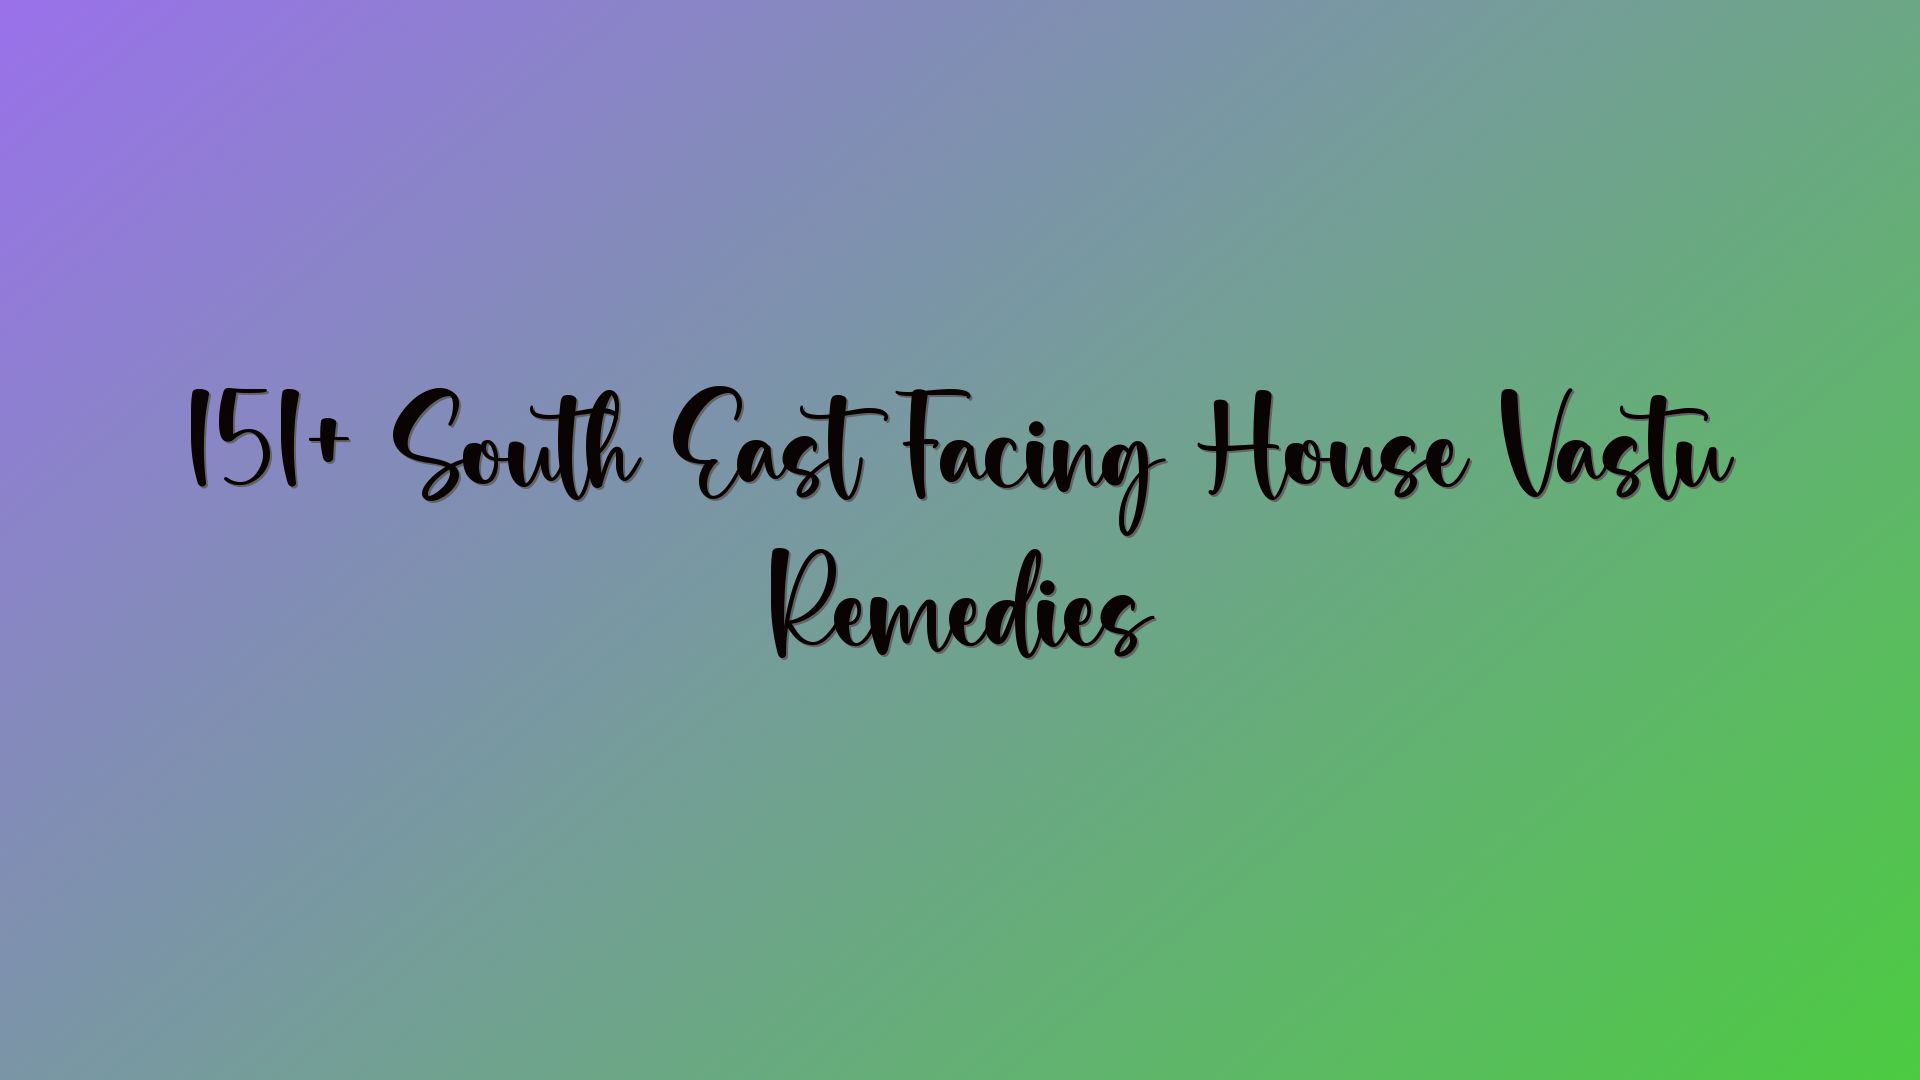 151+ South East Facing House Vastu Remedies